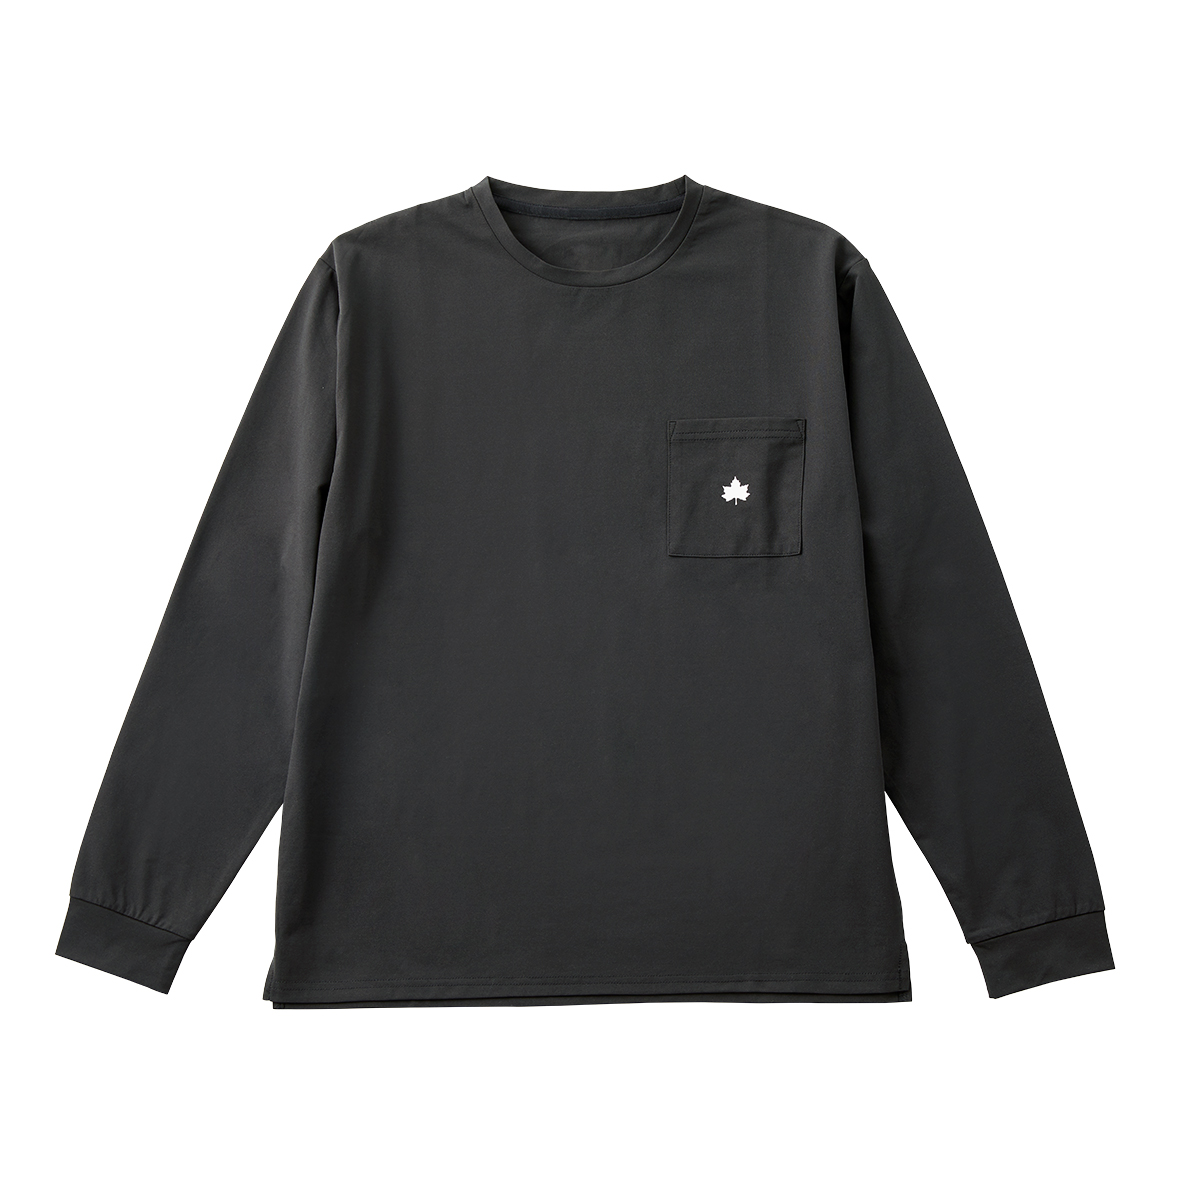 ■LOGOS by Lipner ラウンジロングTシャツ 59207（ブラック・M）